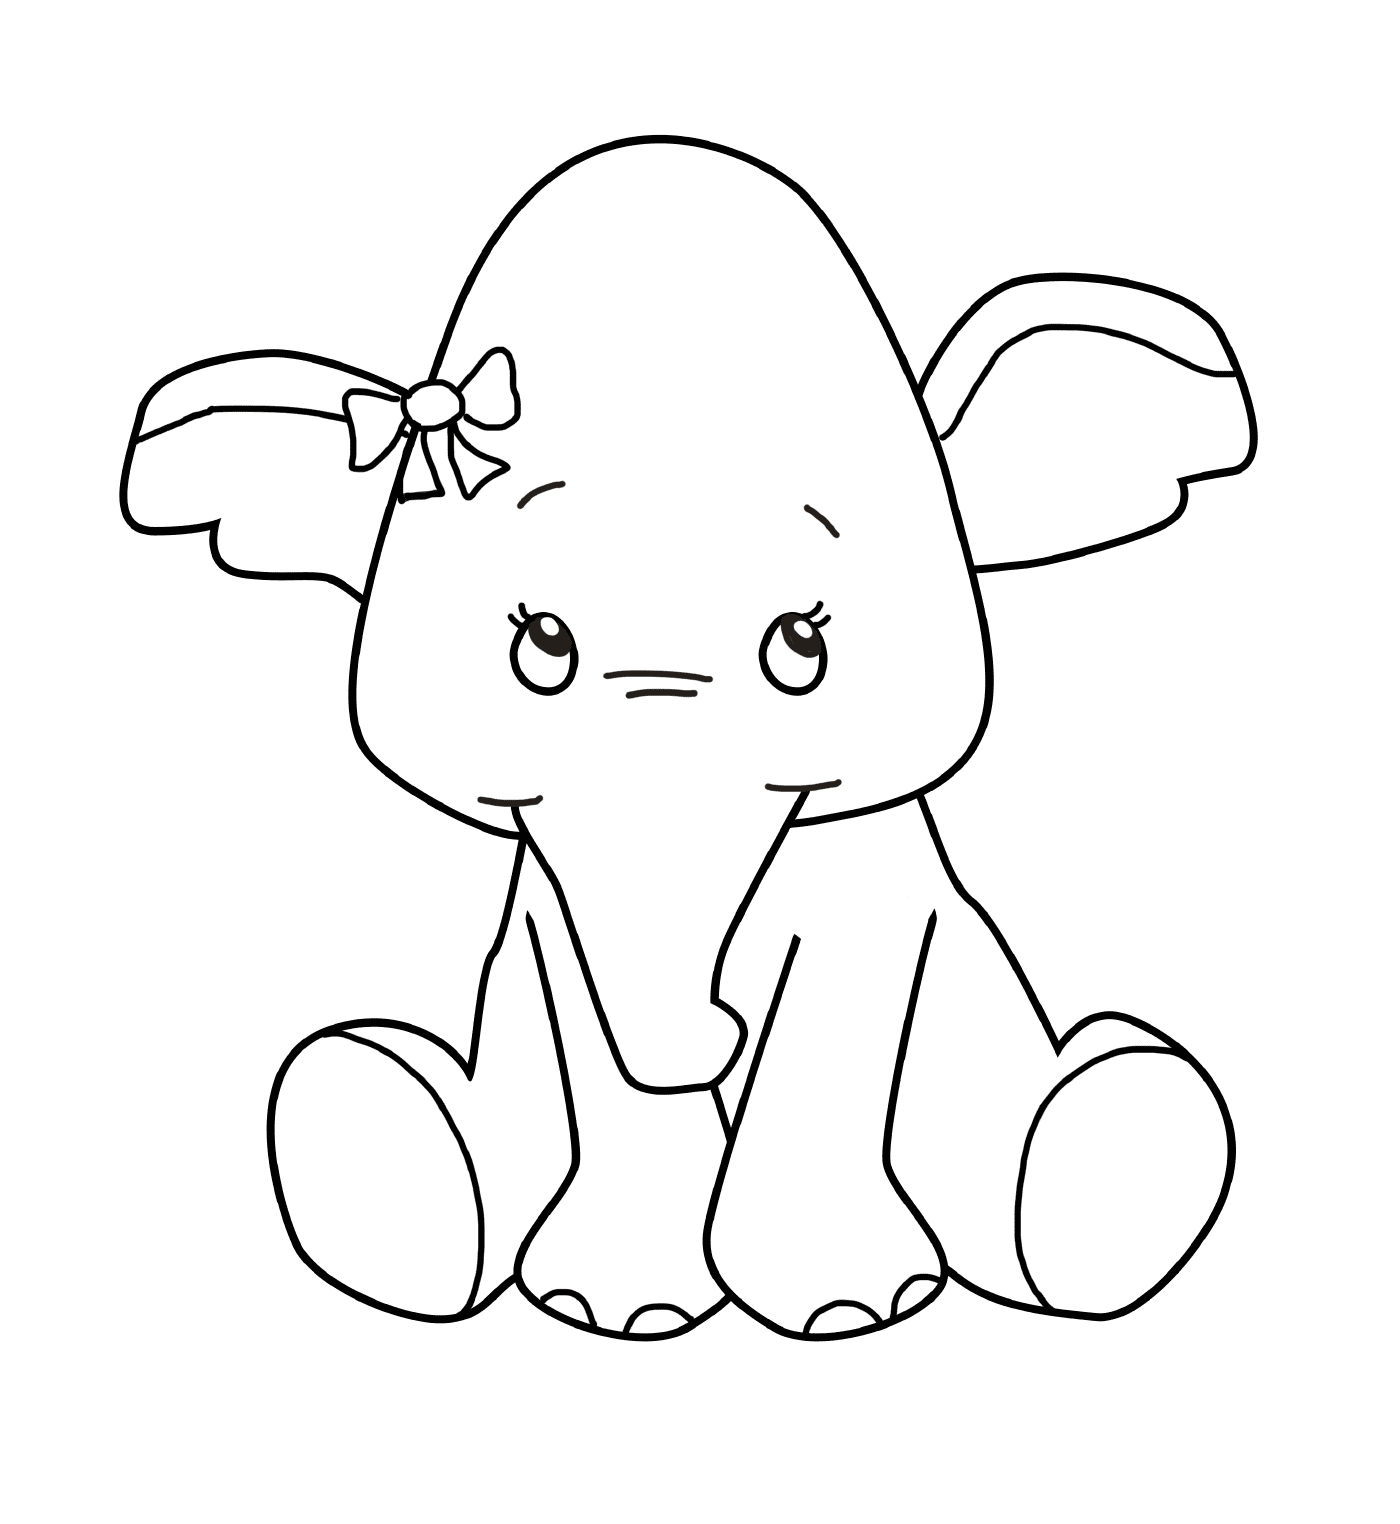  Um bebê elefante com um nó na cabeça 